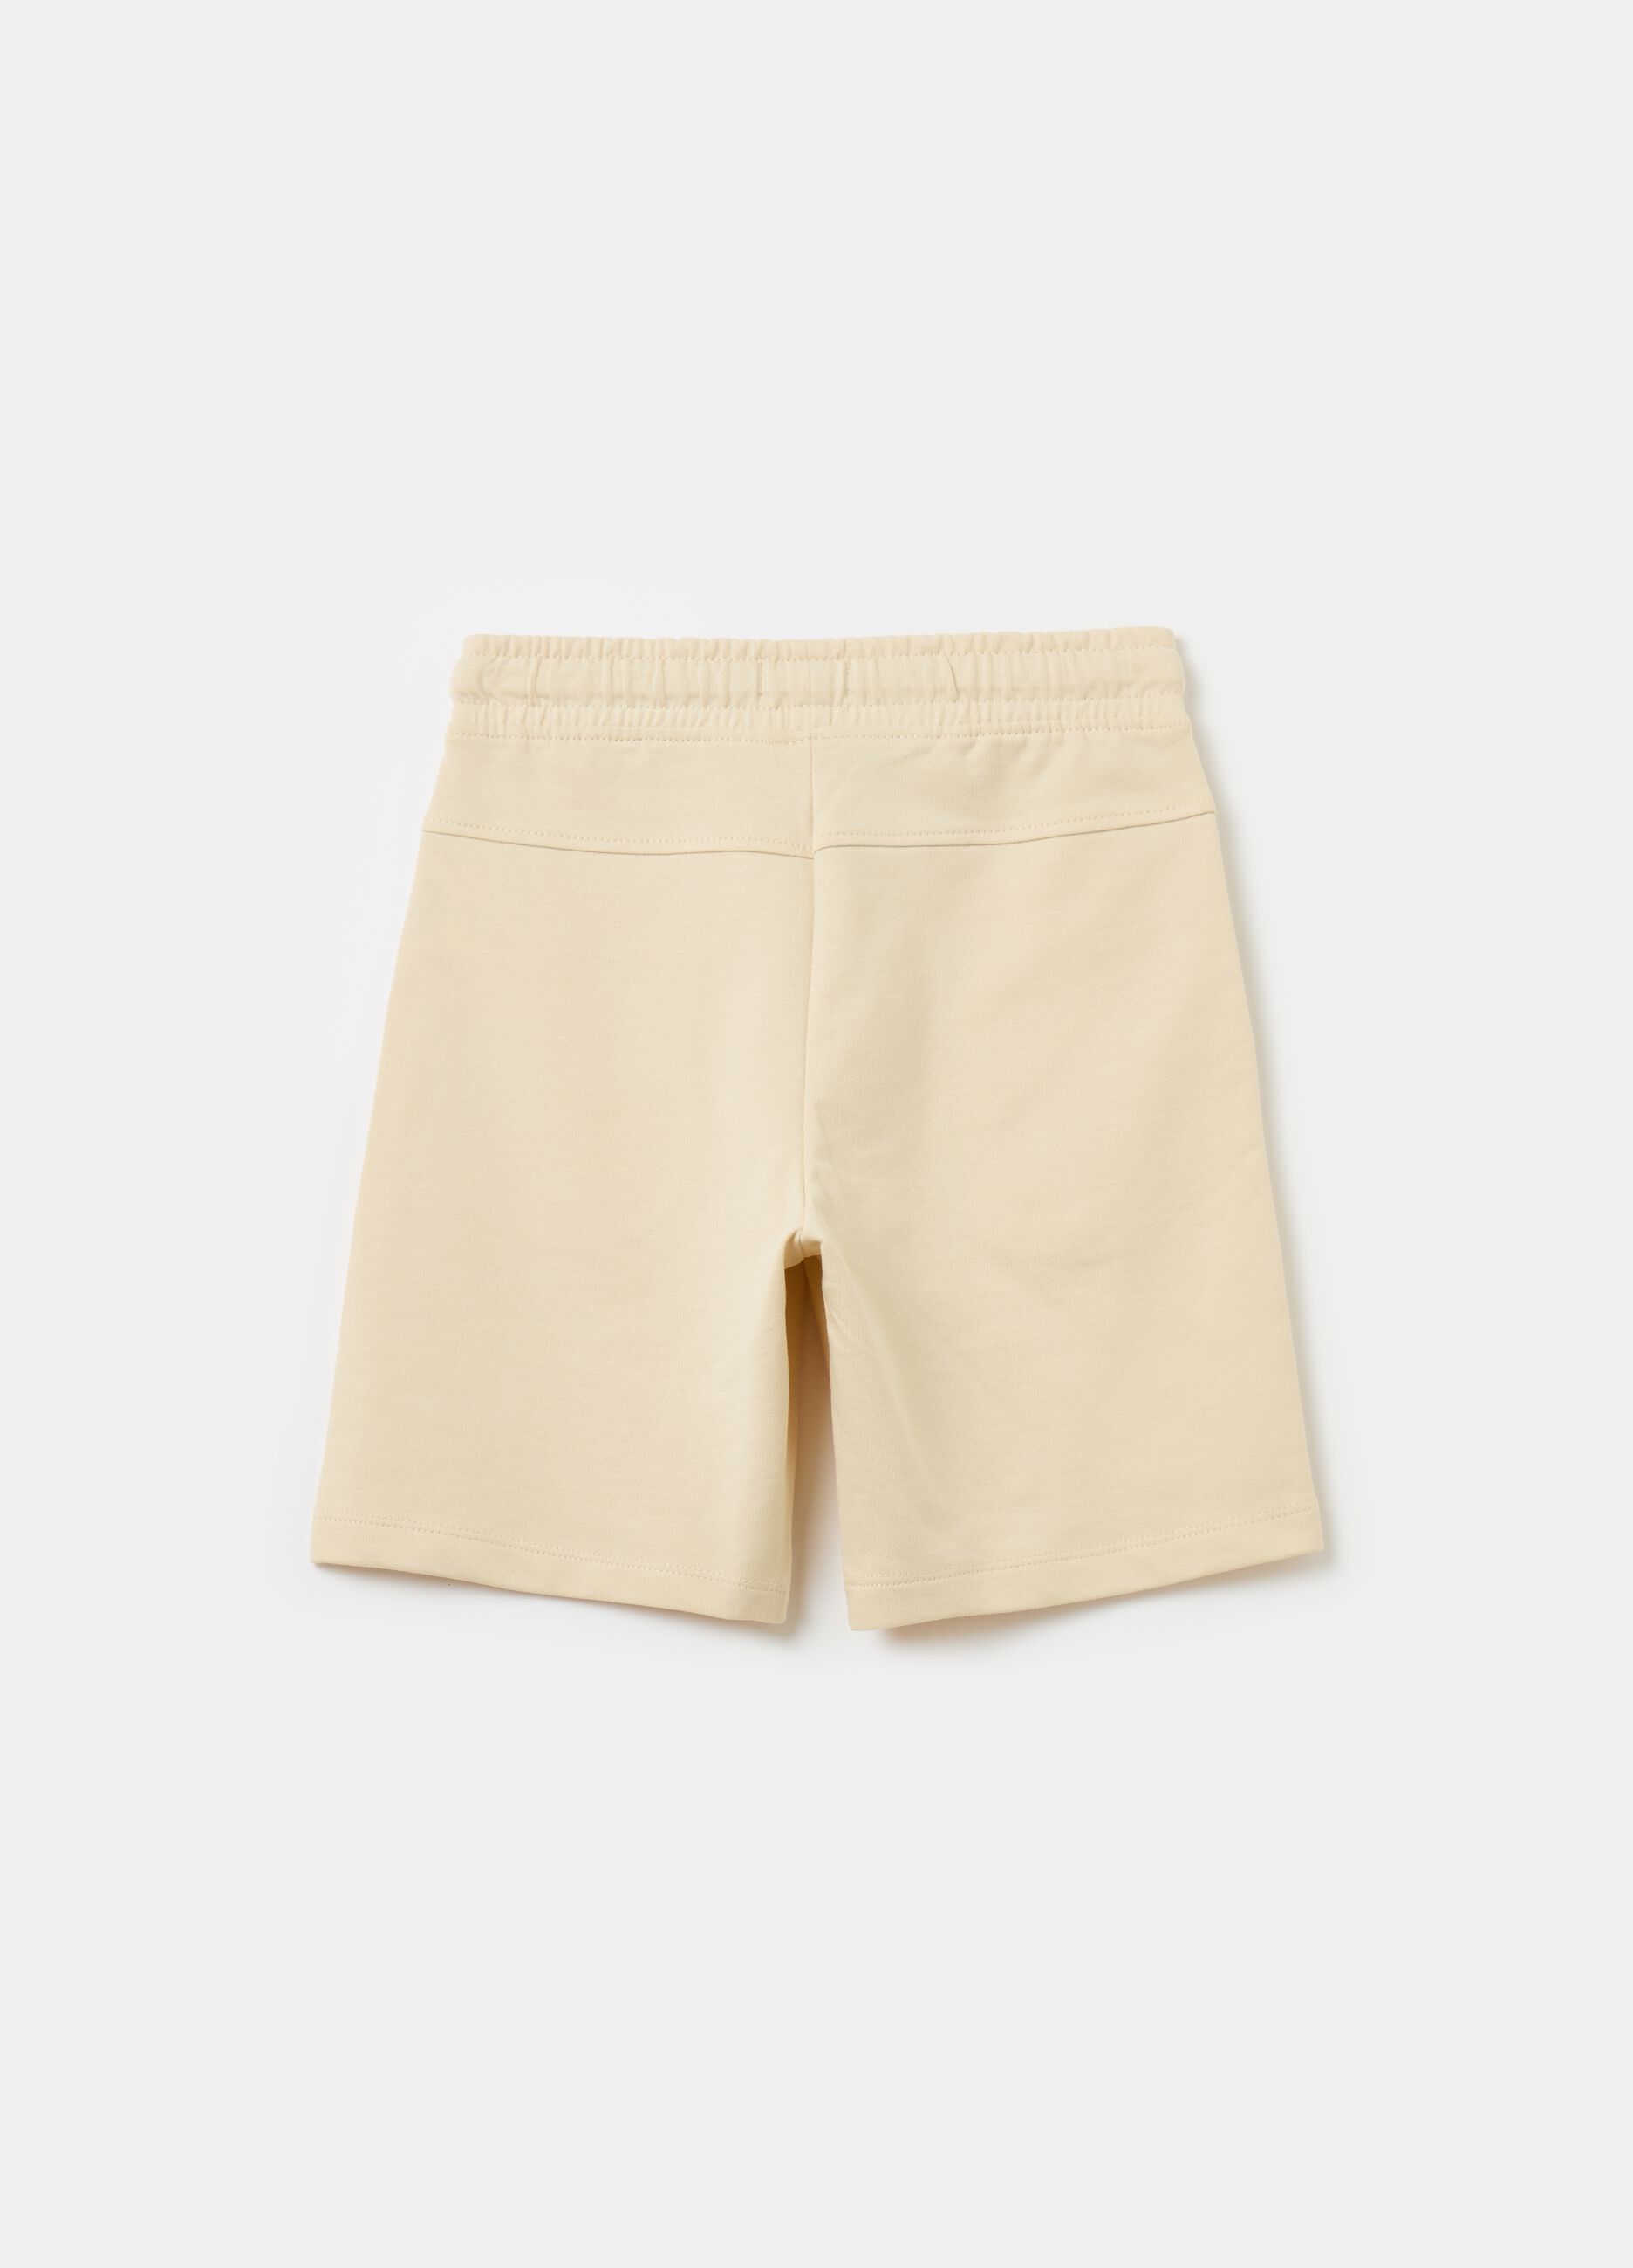 Bermuda shorts with drawstring and print